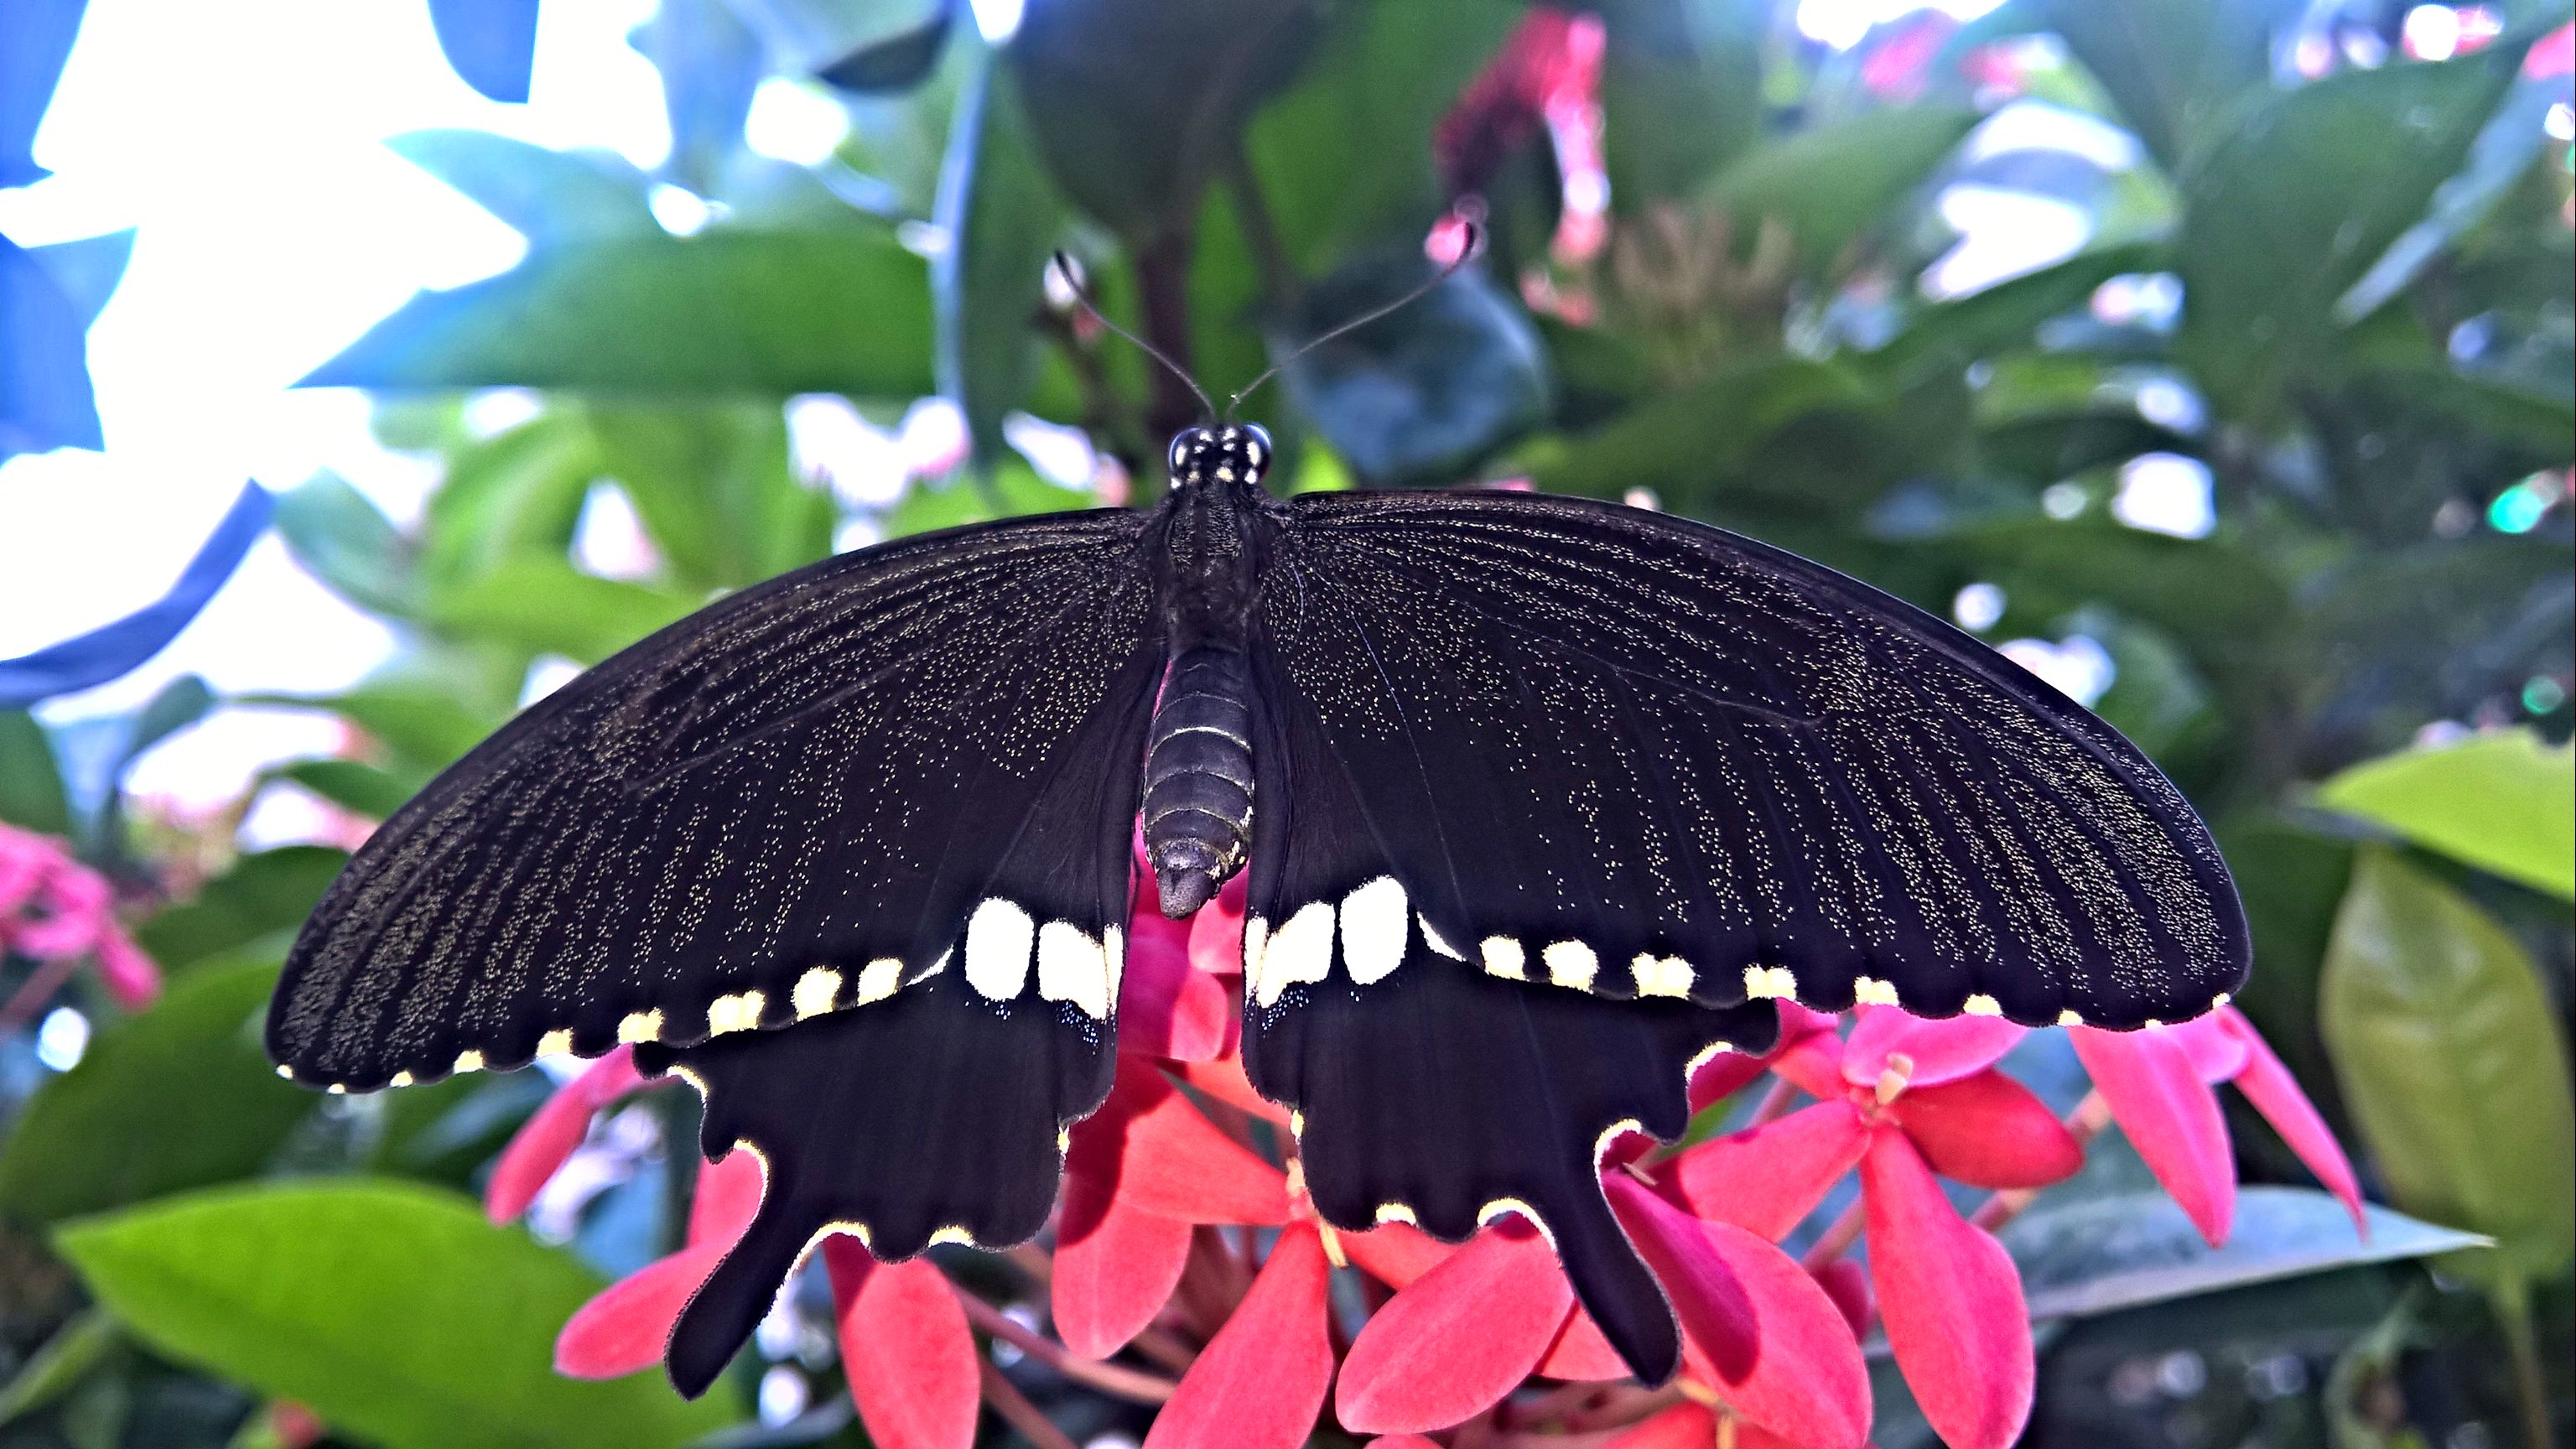 Papilio Polytes, The Common Mormon